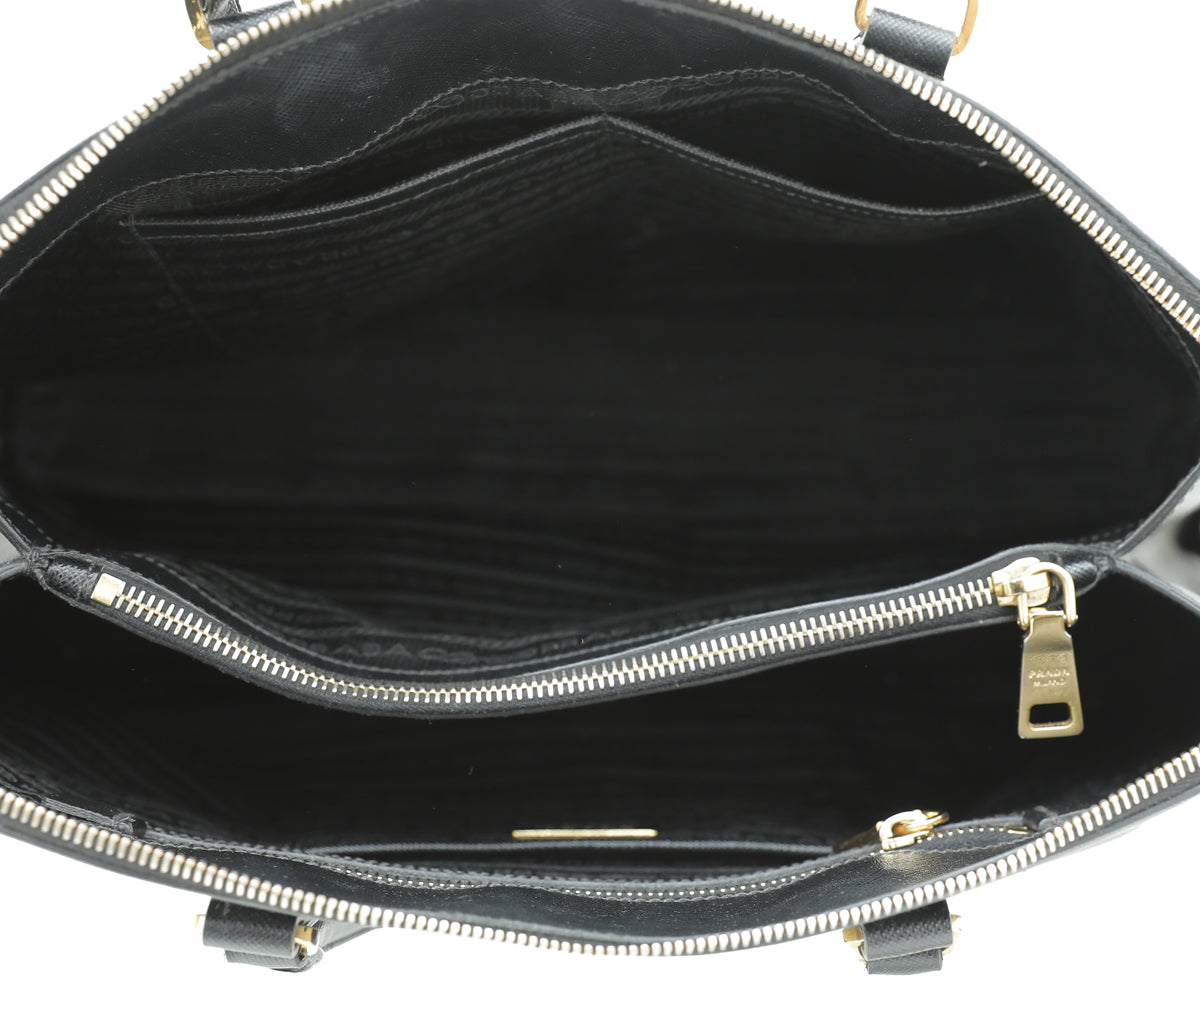 Prada Black Lux Promenade Large Bag